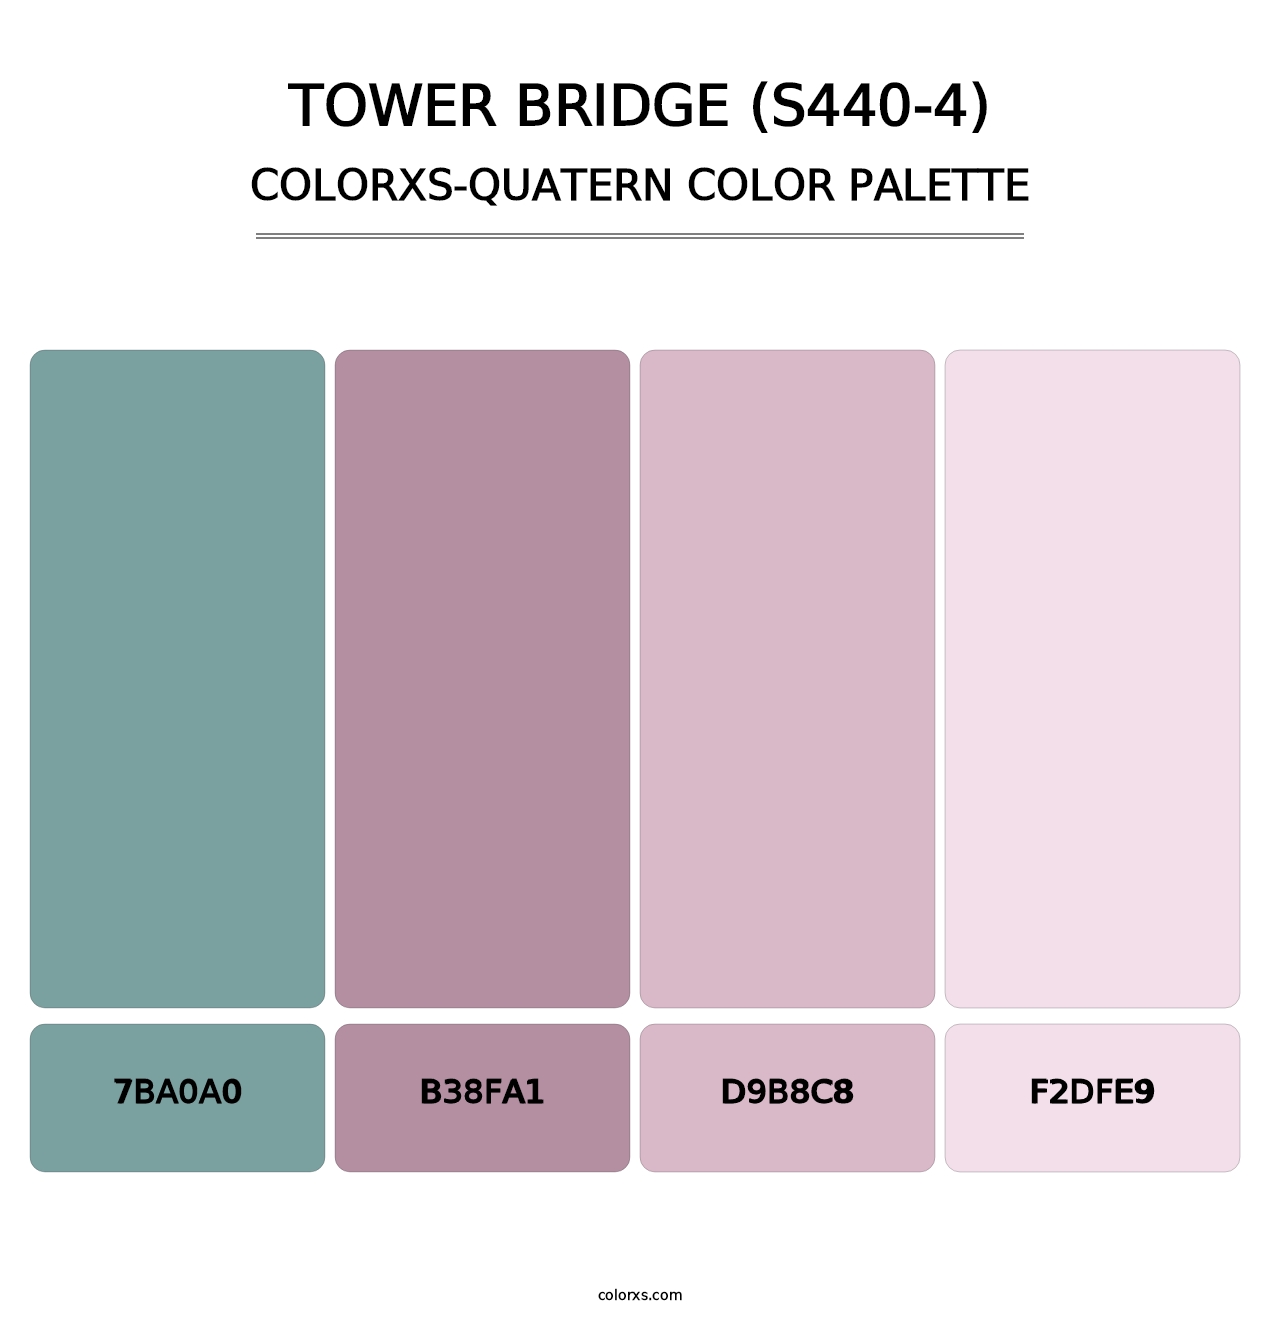 Tower Bridge (S440-4) - Colorxs Quatern Palette